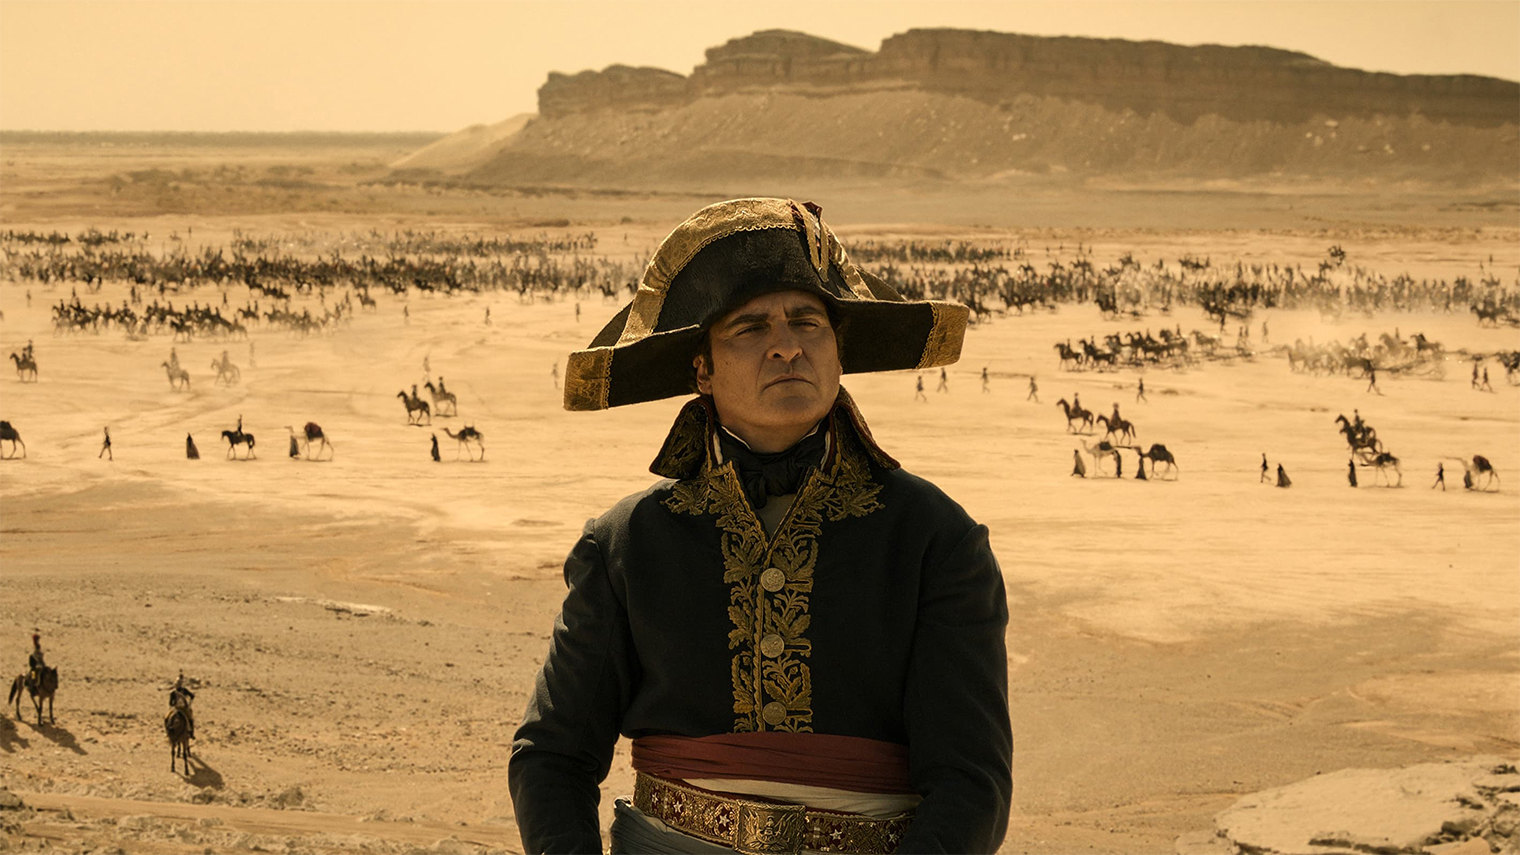 В некоторых сценах Ридли Скотт высмеивает рост Наполеона. Скажем, в Египте главному герою приходится встать на подставку, чтобы взглянуть в глаза мумии фараона